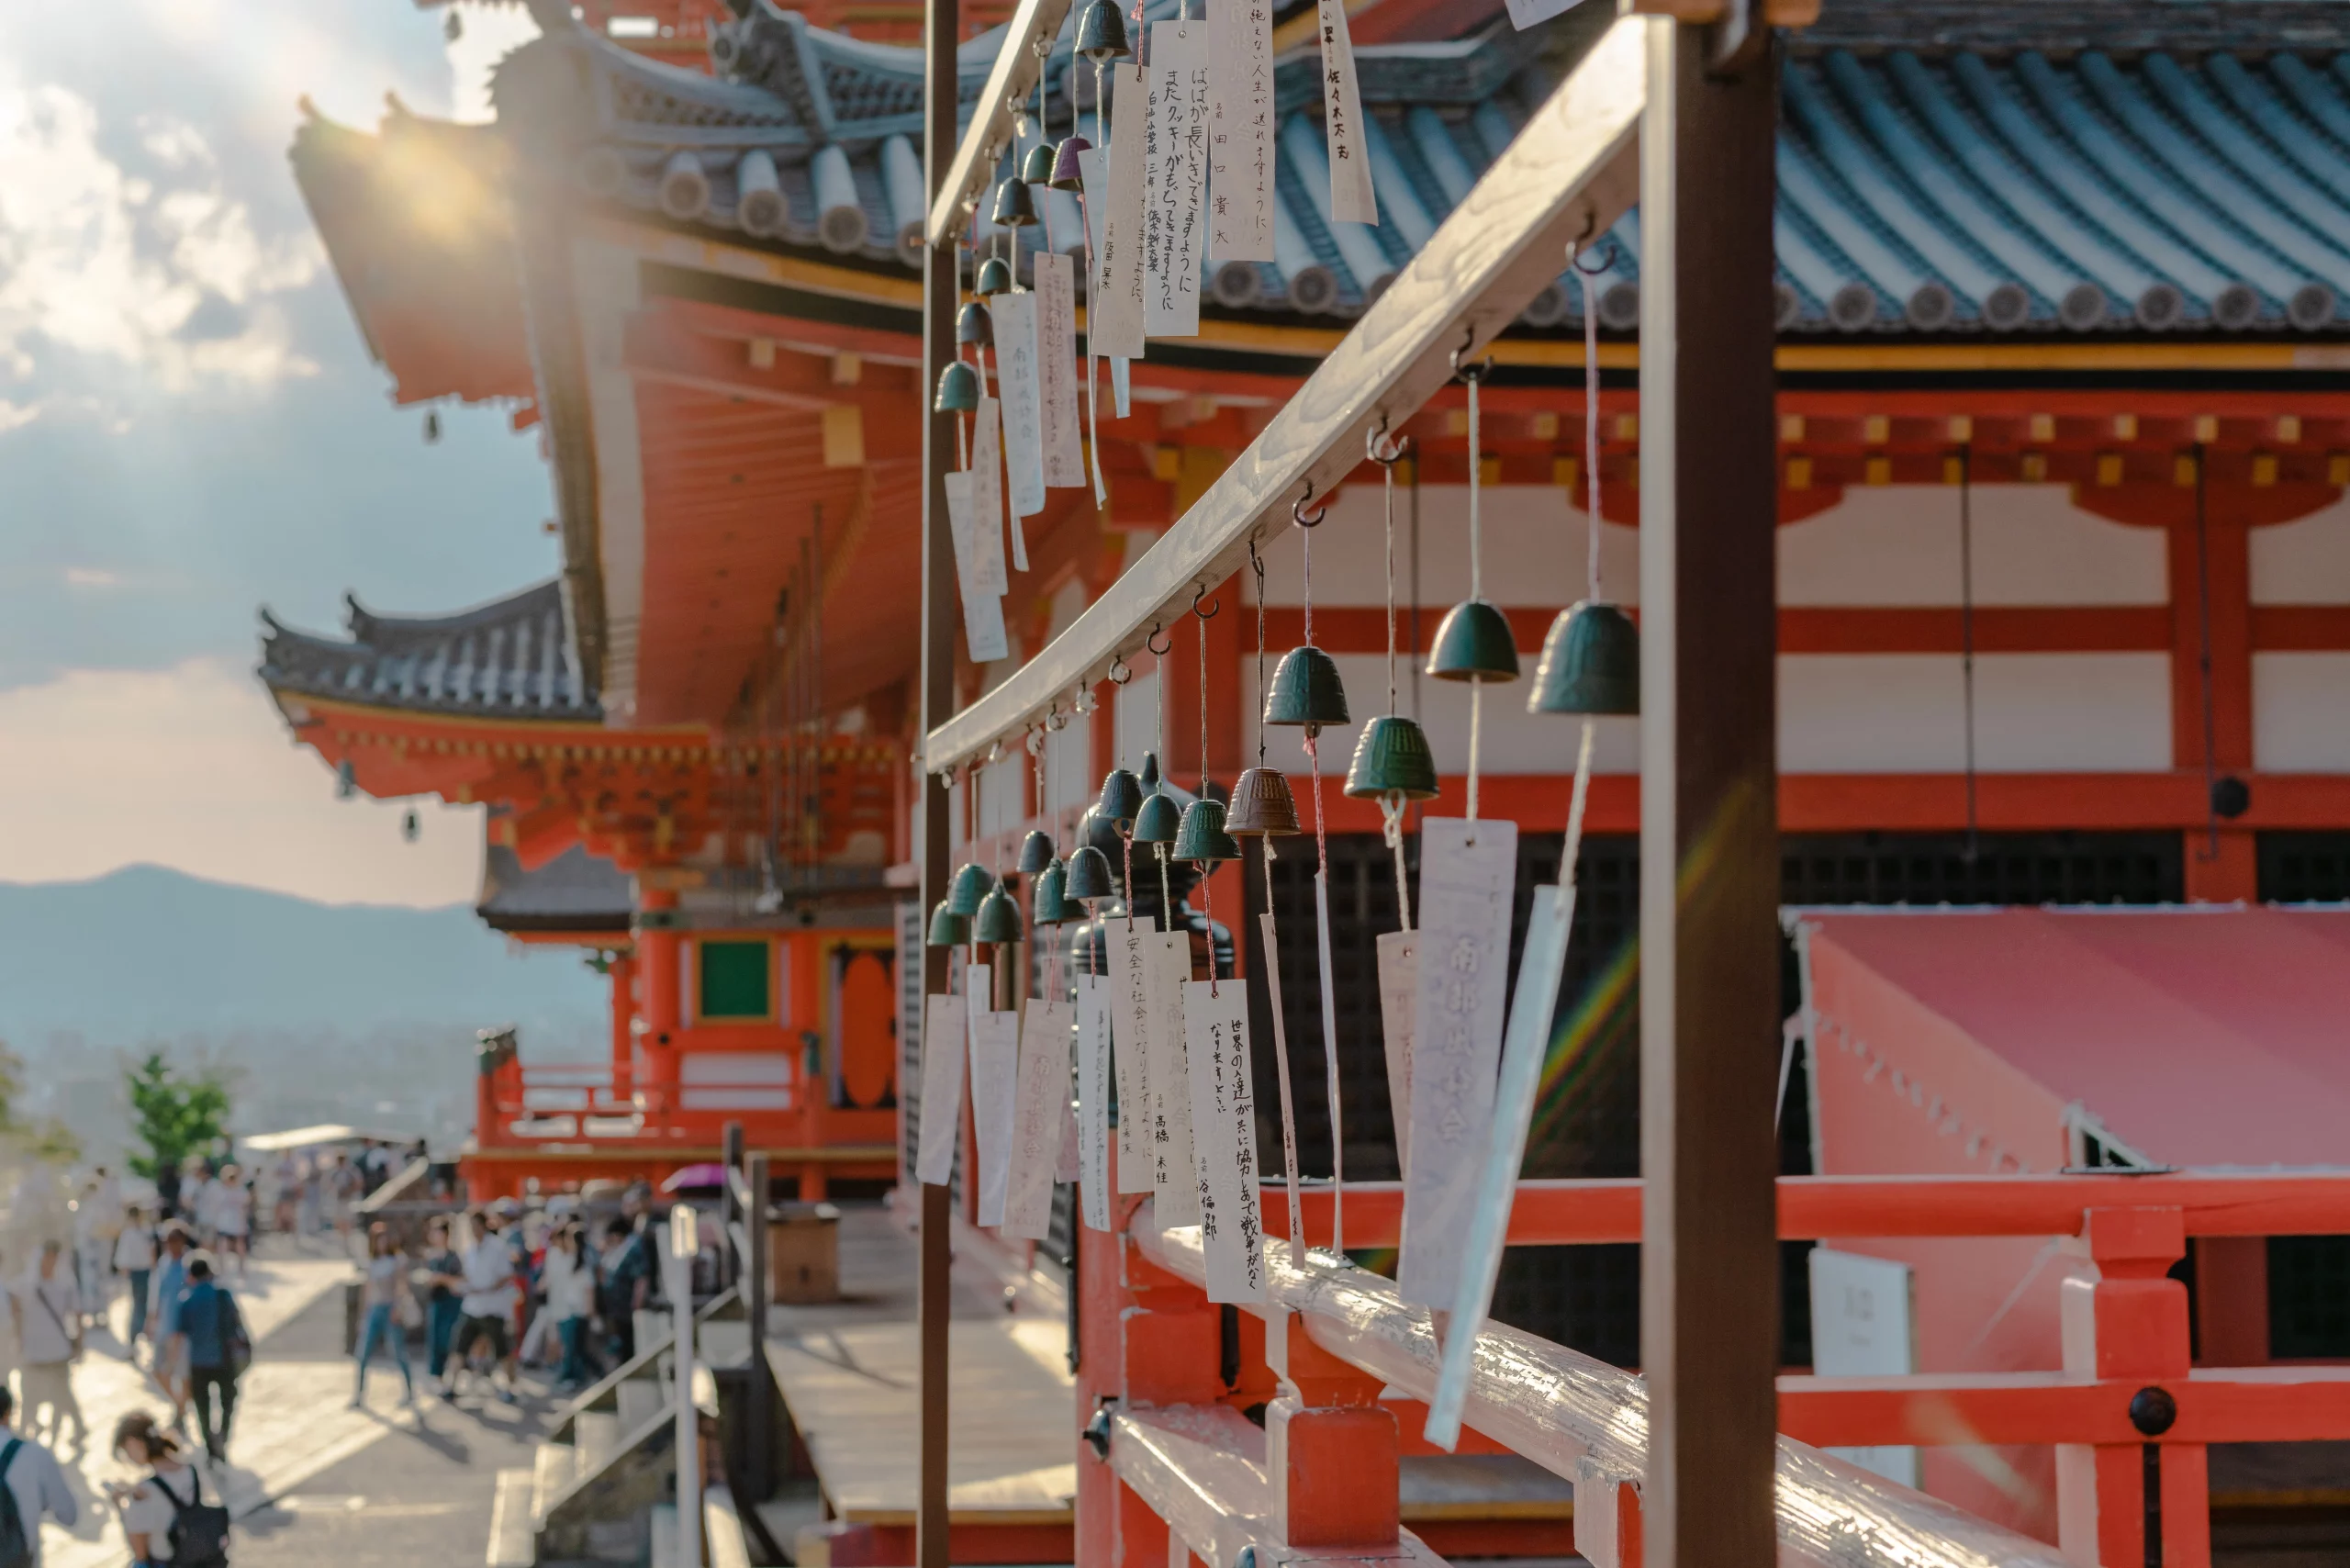 Kiyomizu-dera mang ý nghĩa là “Đền nước tinh khiết”